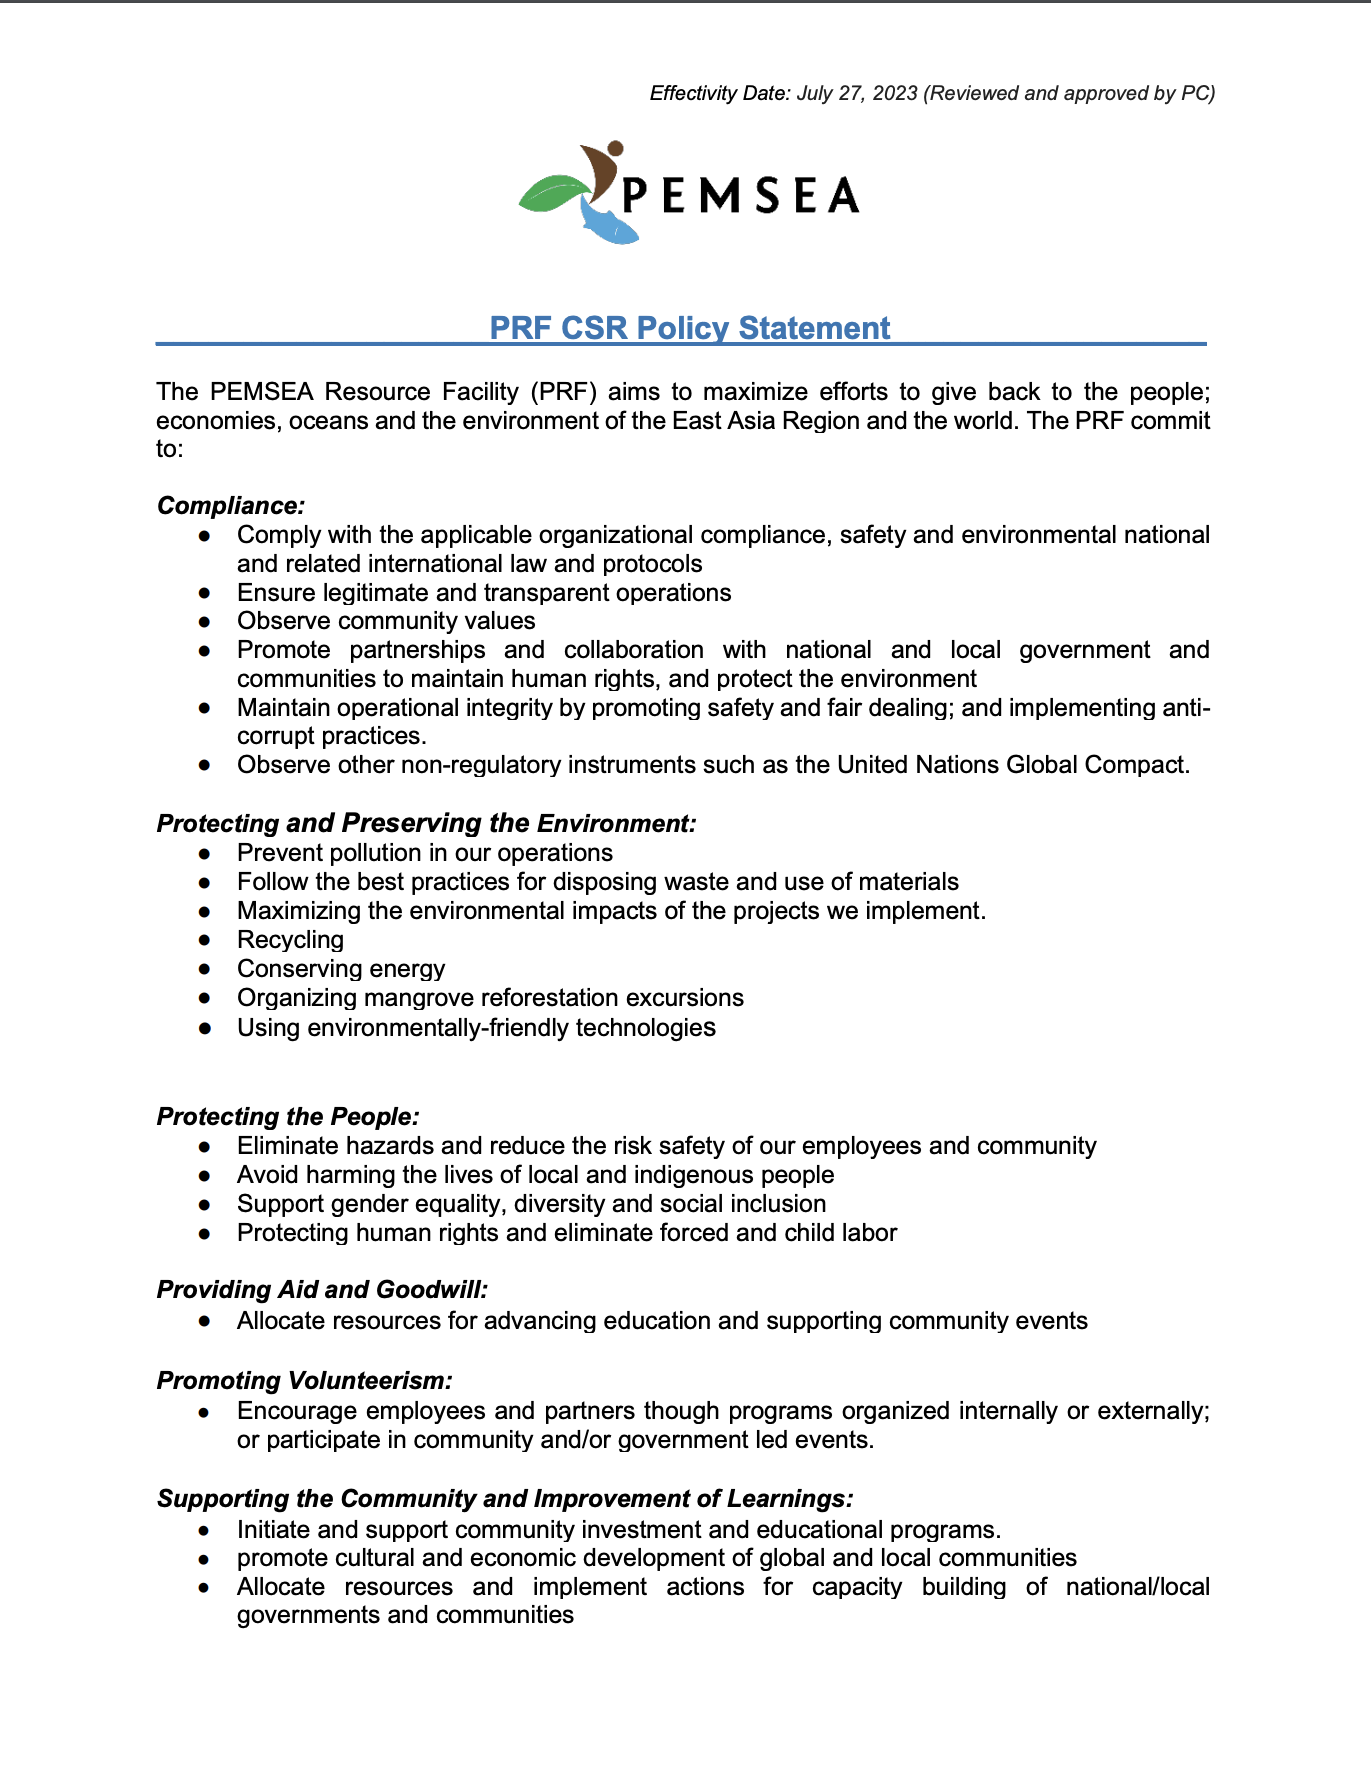 PRF CSR Policy Statement